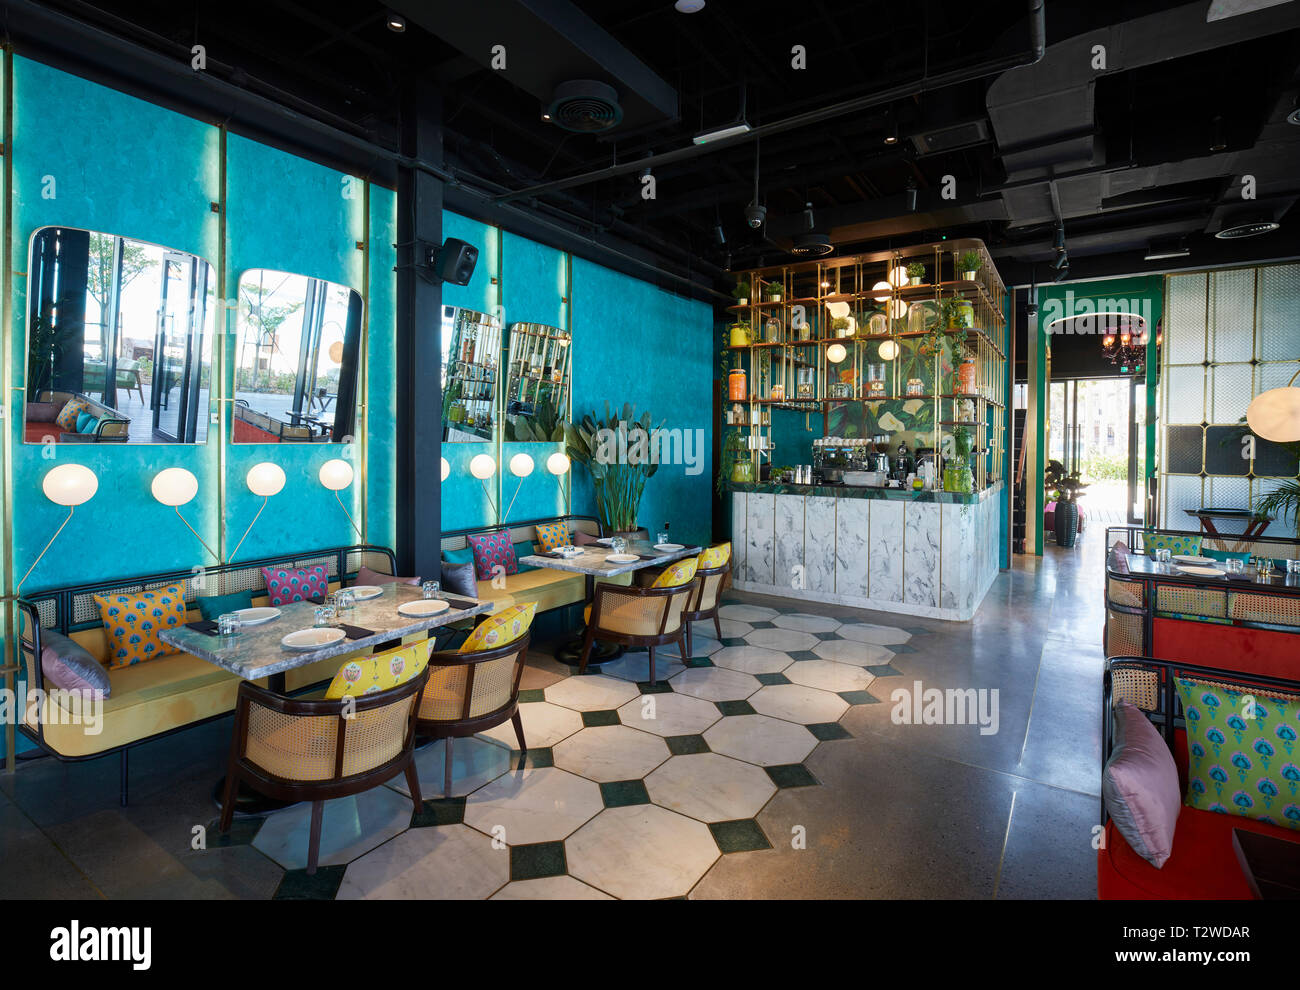 Area inferiore interno del ristorante. Masti Dubai, Dubai, Emirati Arabi Uniti. Architetto: Studio Lotus , 2018. Foto Stock